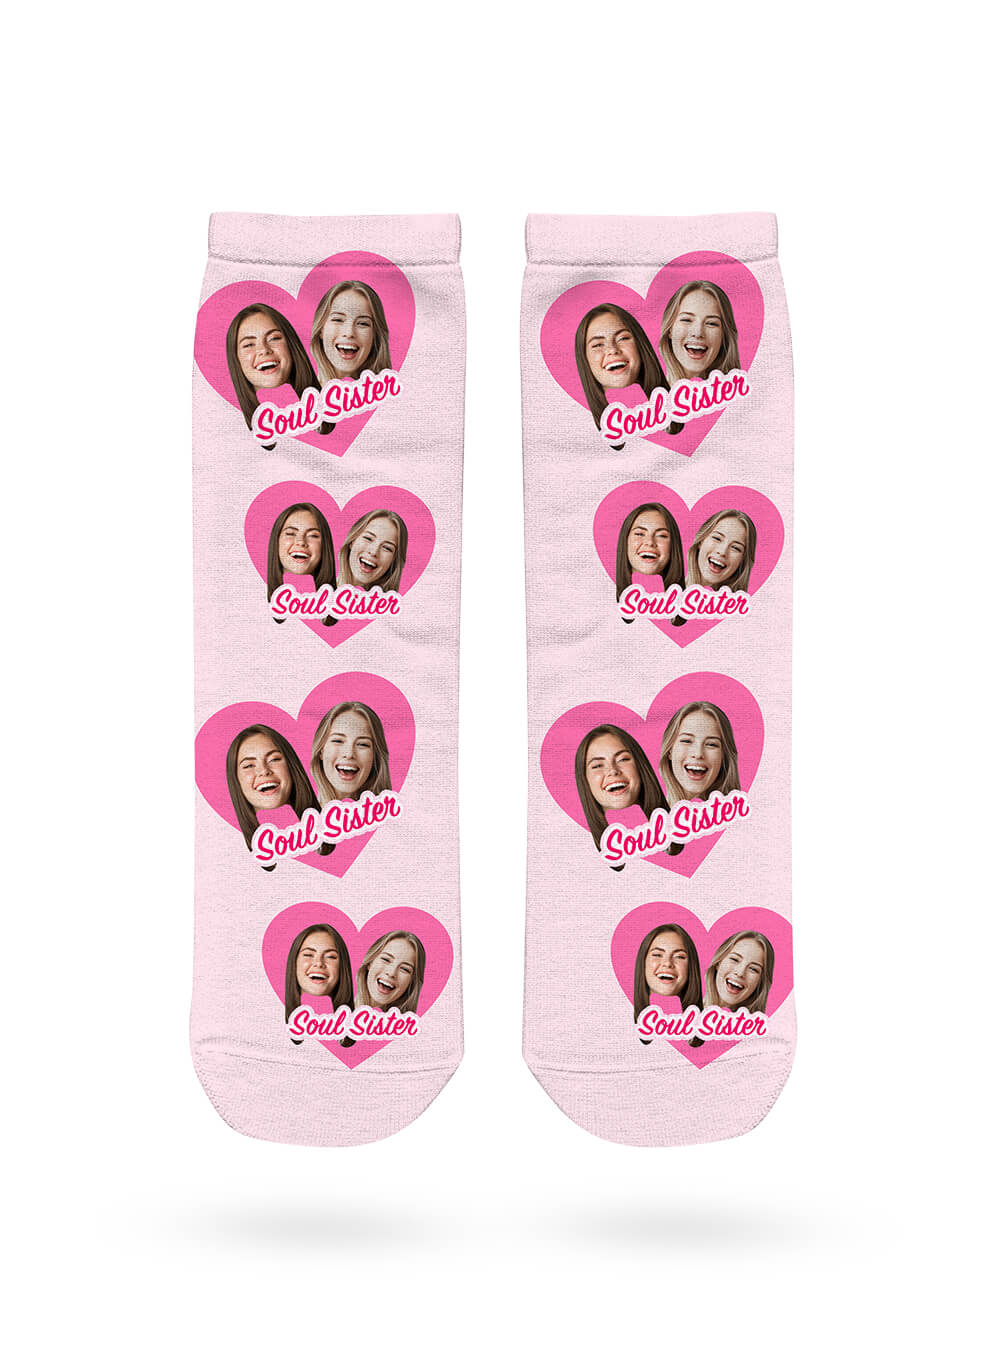 Soul Sister Çorapları